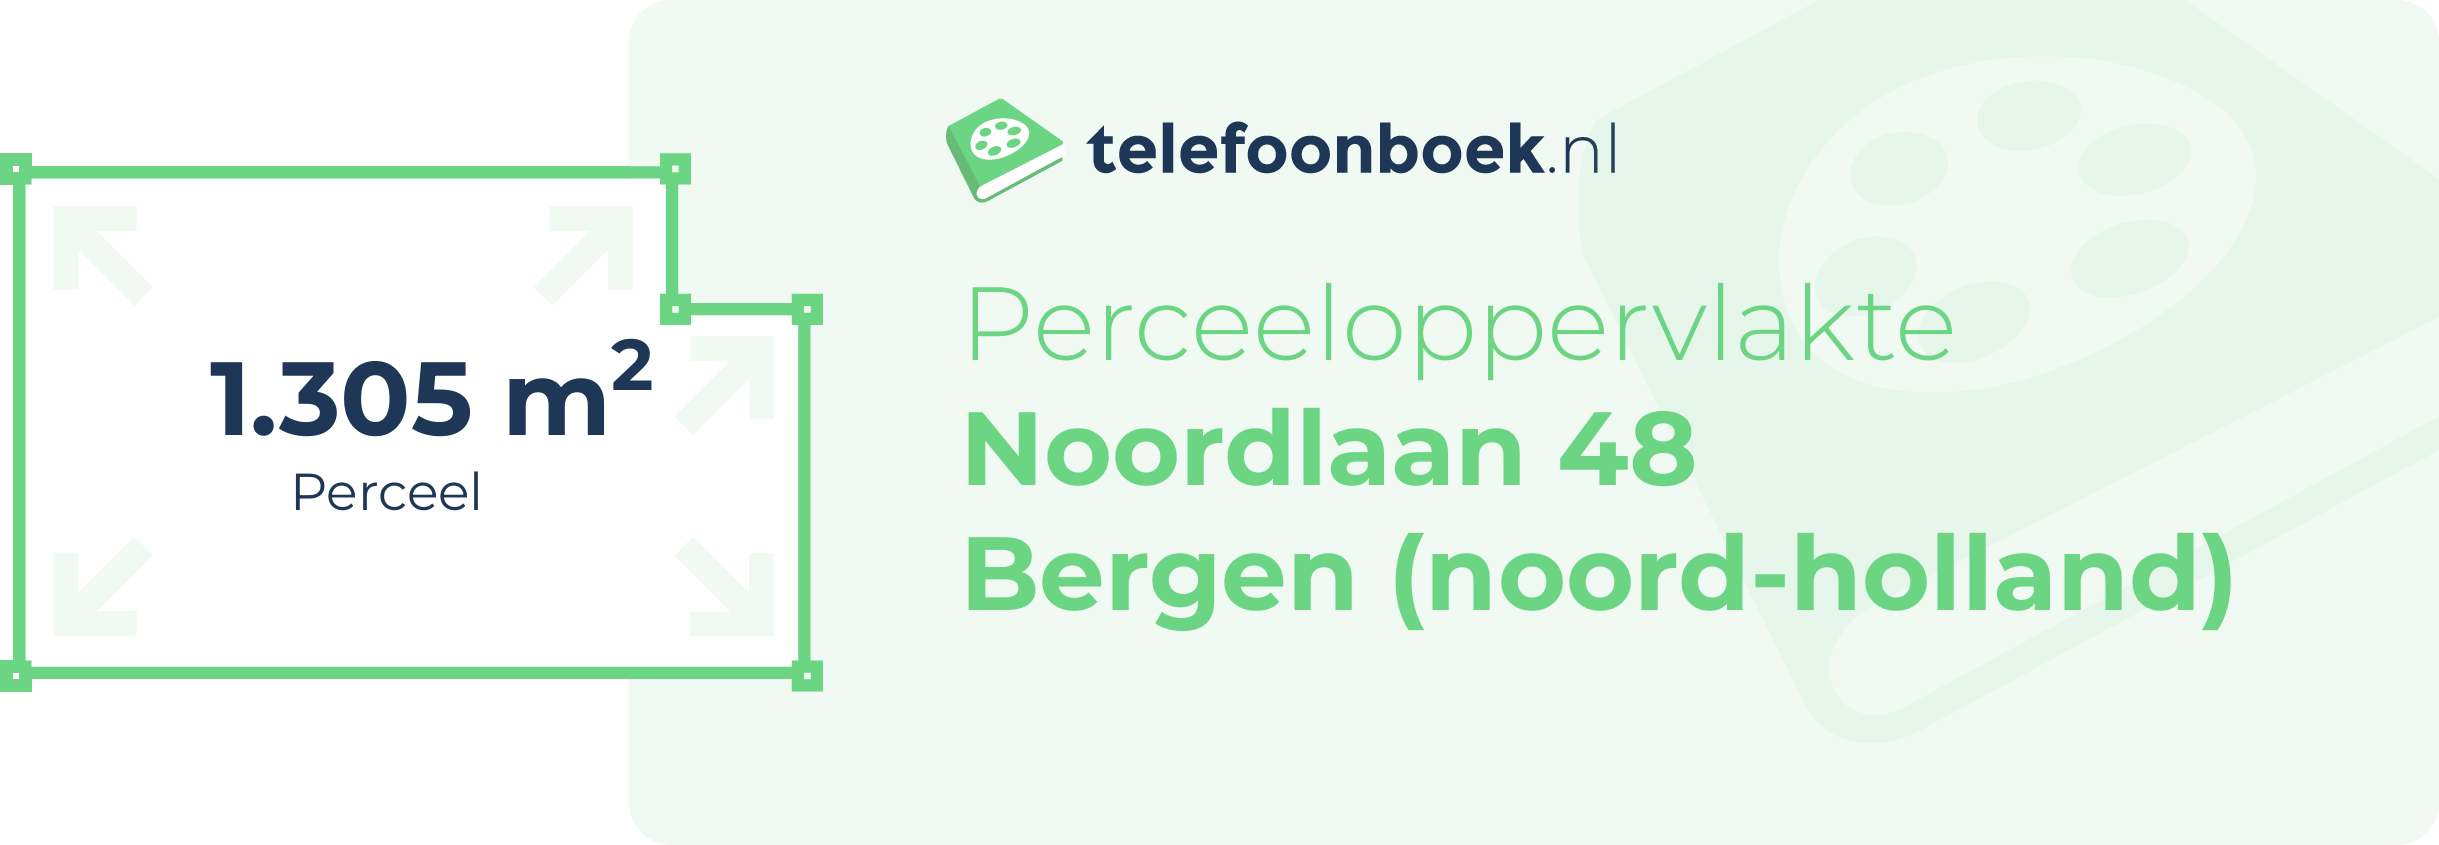 Perceeloppervlakte Noordlaan 48 Bergen (Noord-Holland)